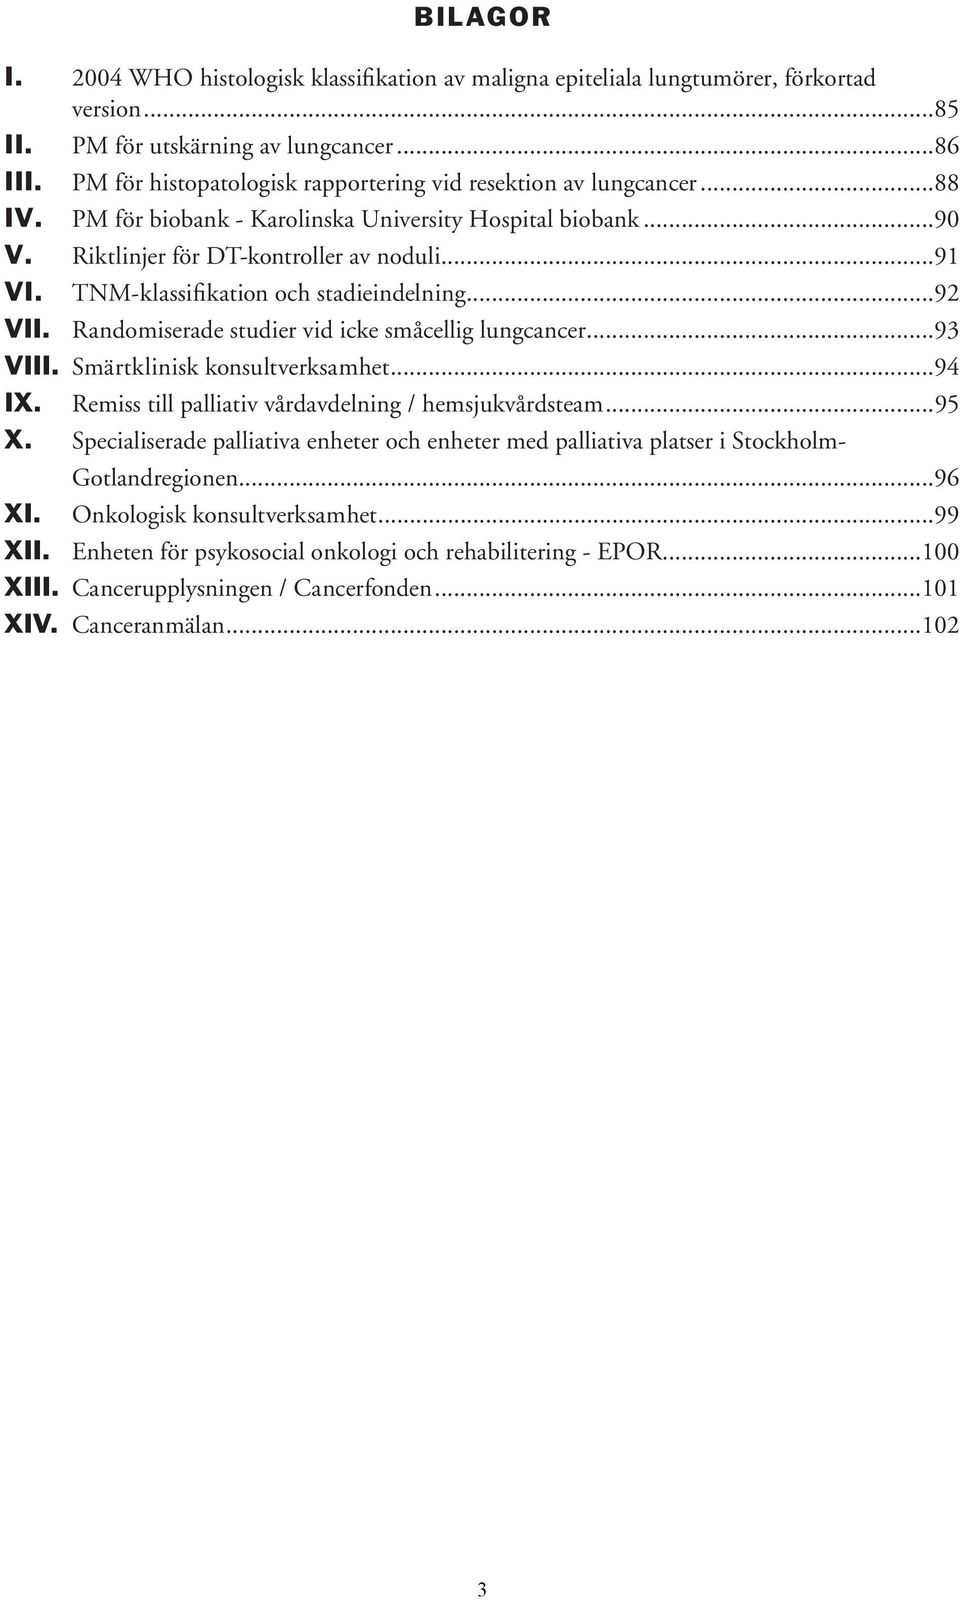 TNM-klassifikation och stadieindelning...92 VII. Randomiserade studier vid icke småcellig lungcancer...93 VIII. Smärtklinisk konsultverksamhet...94 IX.